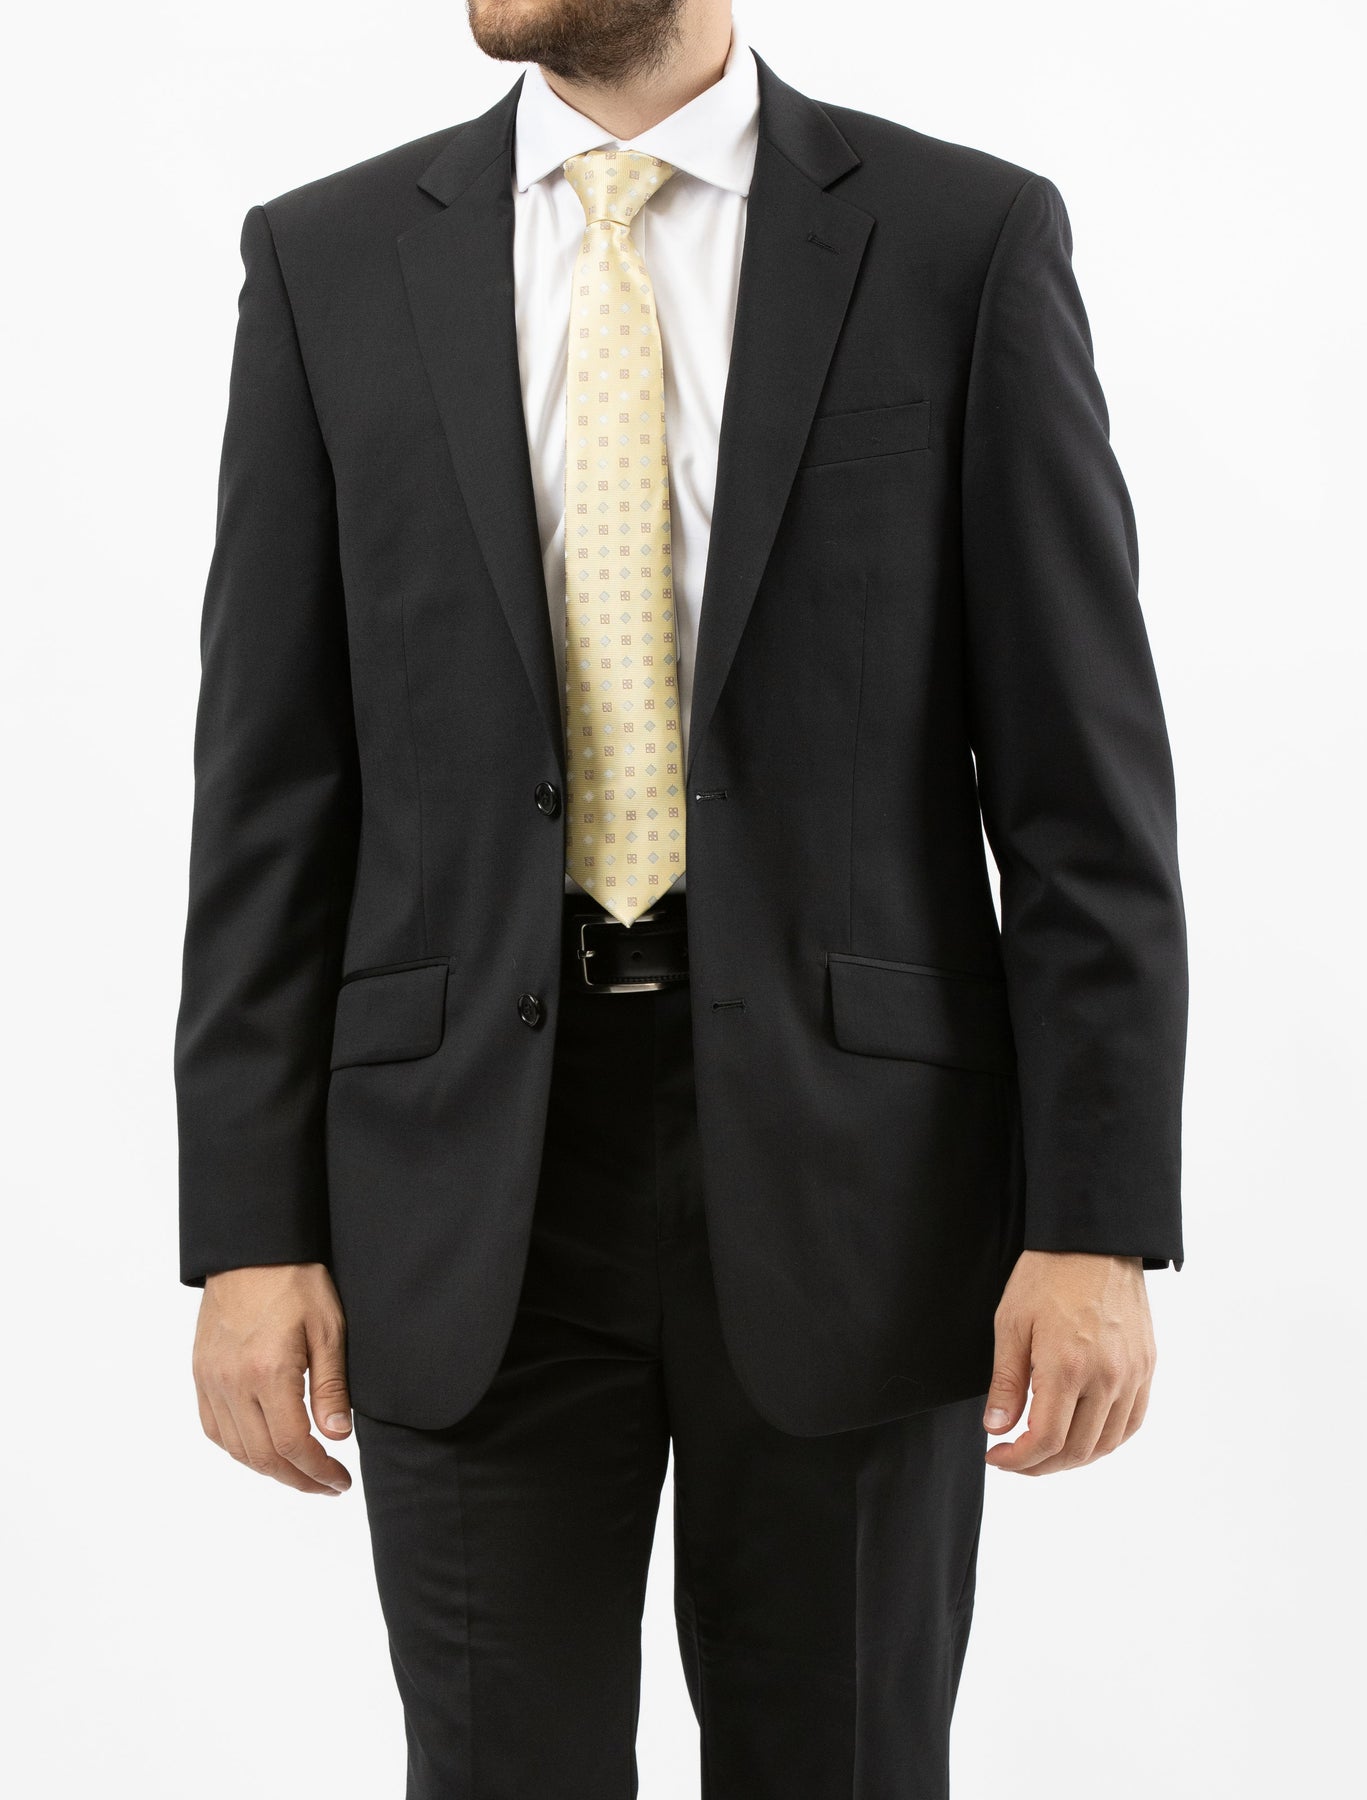 Mens Suits Online - Best Mens Suits | Karako – Karako Suits